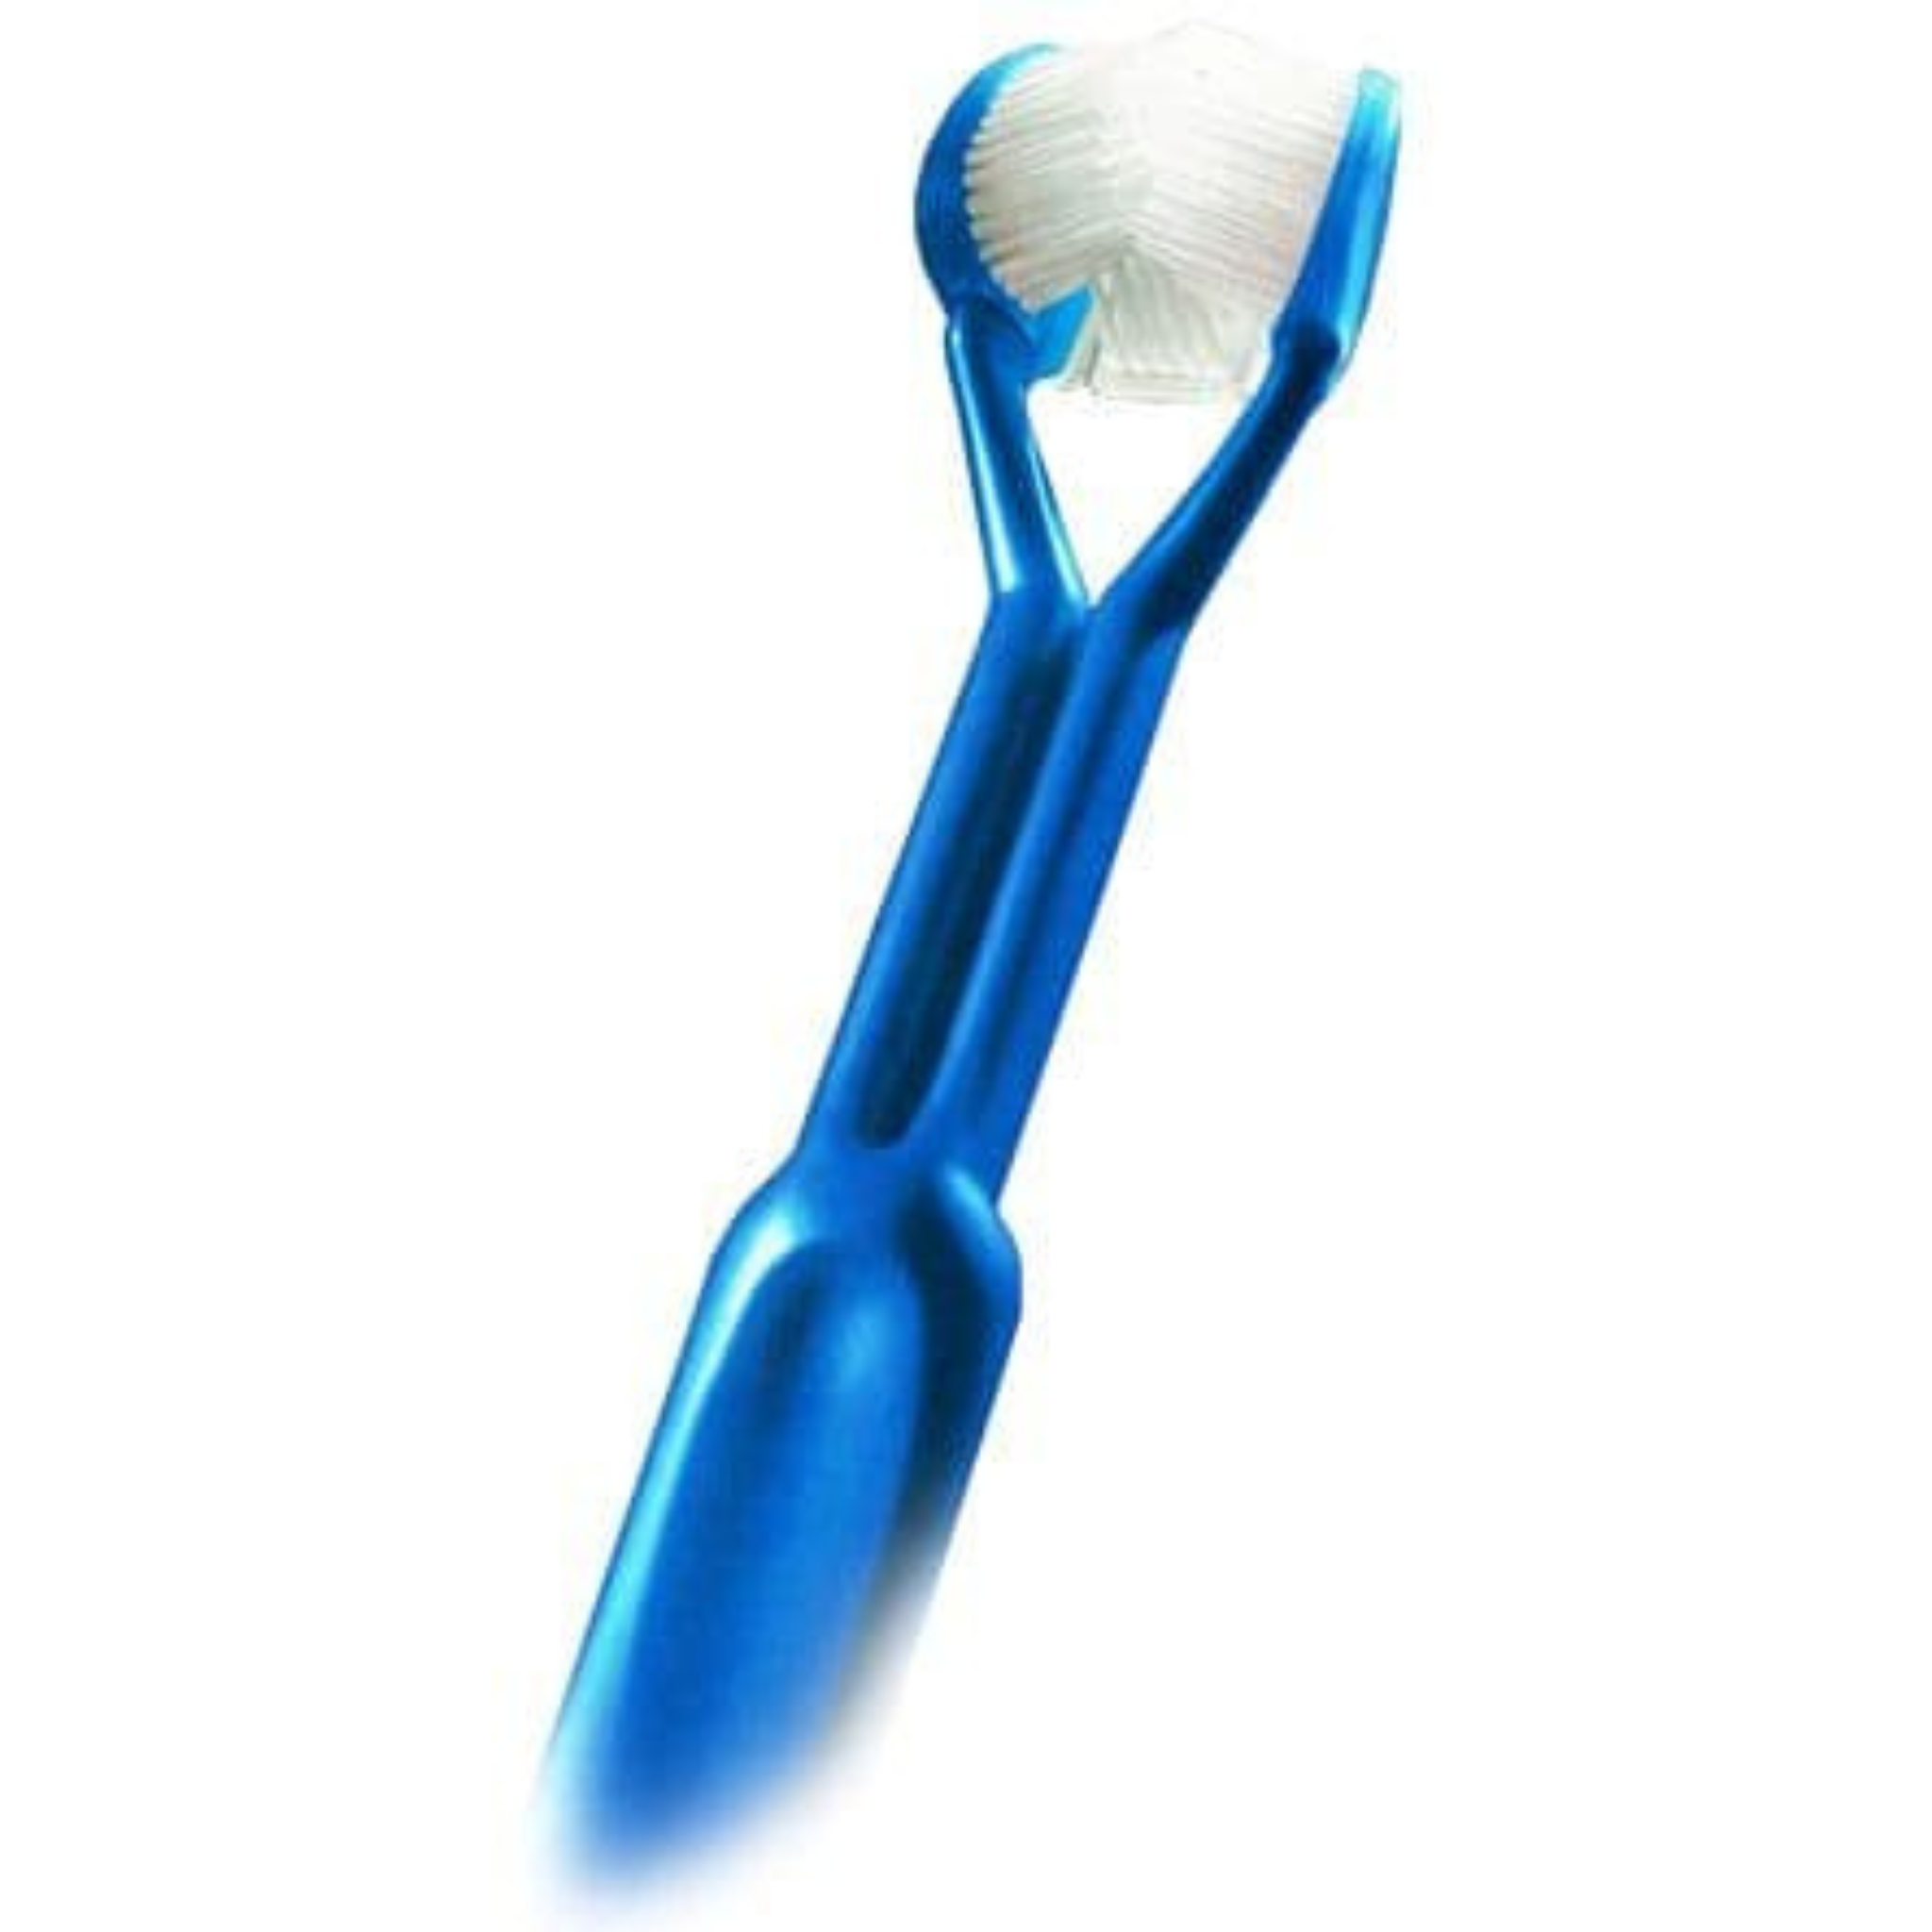 Dentrust - Toothbrush for SEN & Sensory brushing - 3-sided